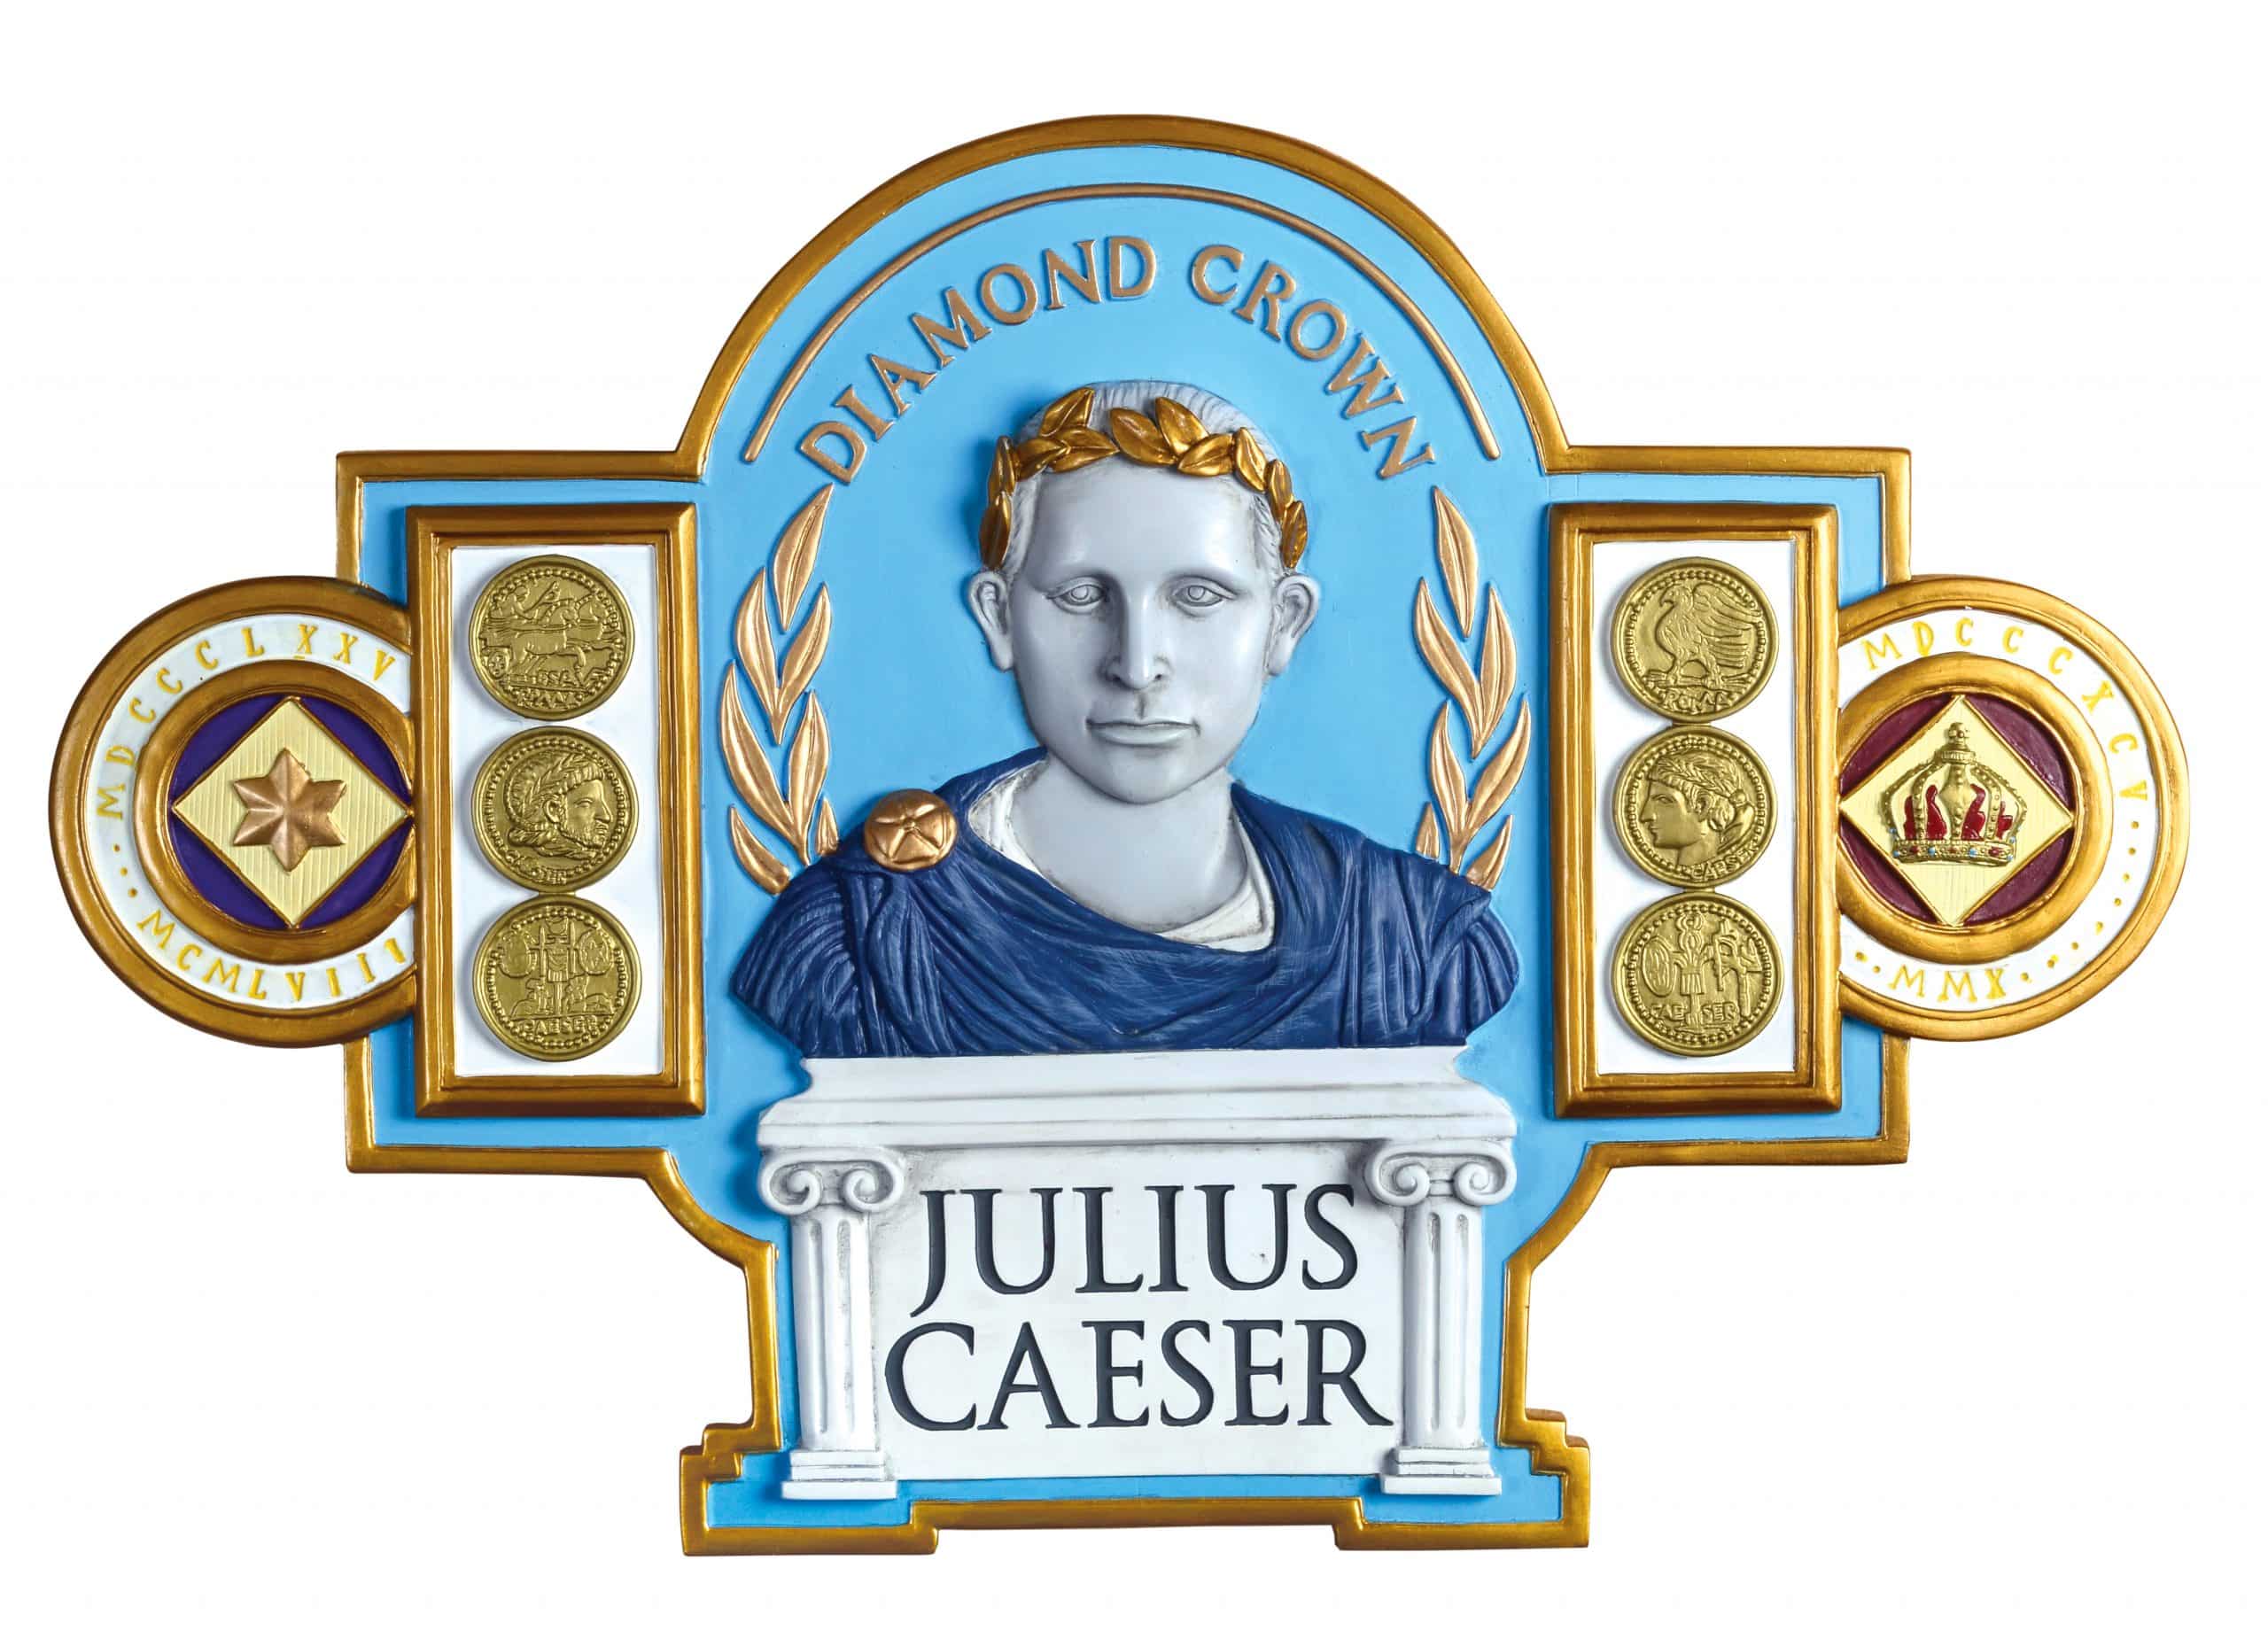 julius caeser brand plaque